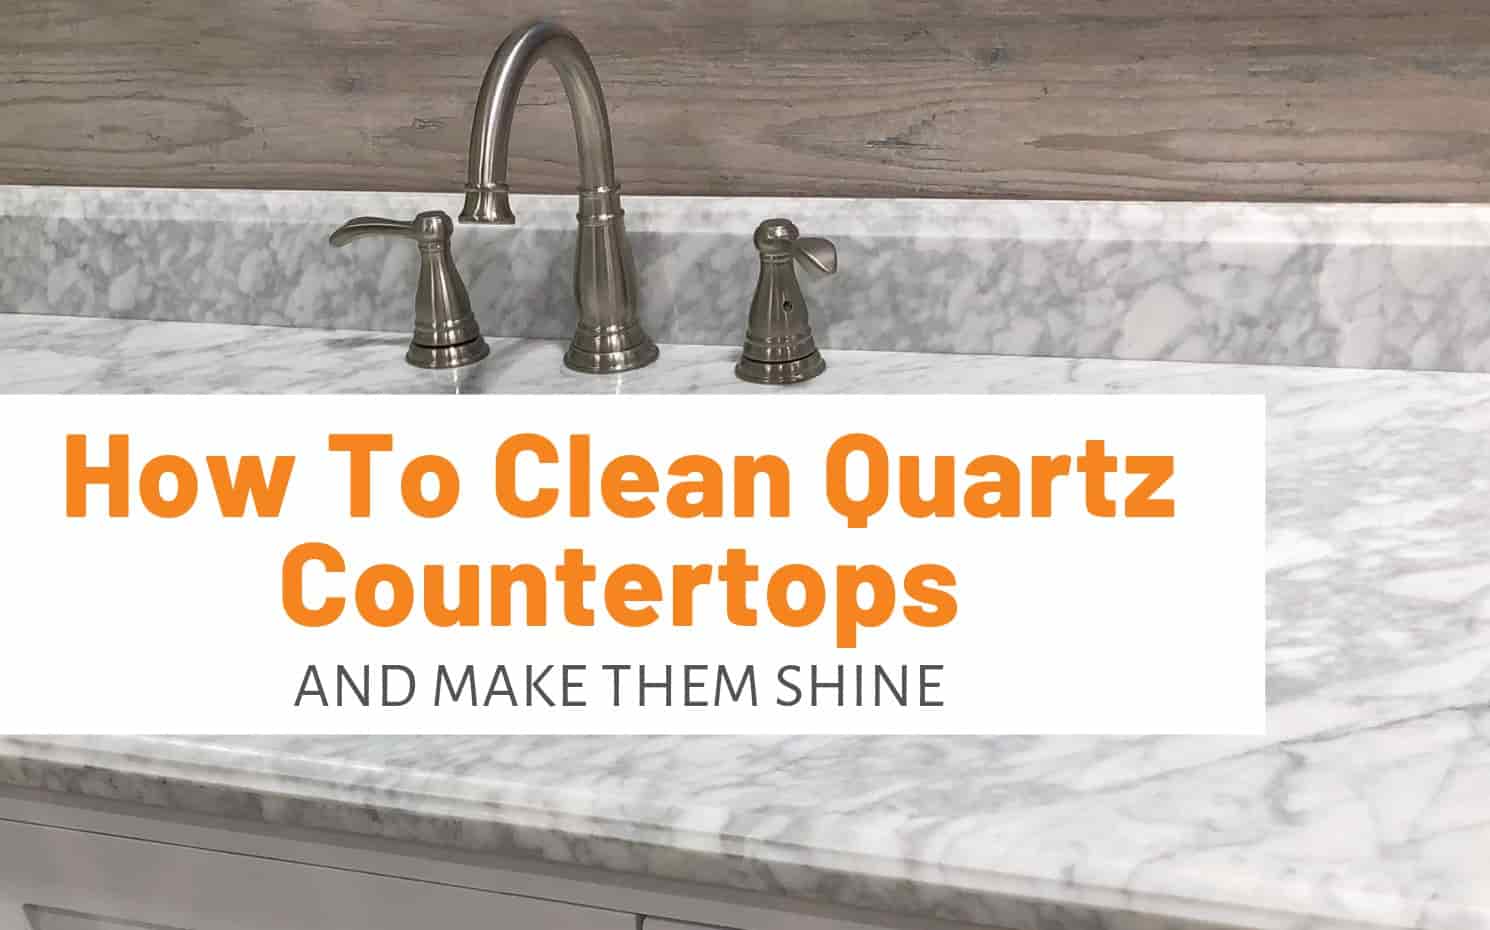 How to Seal Quartz Countertops?